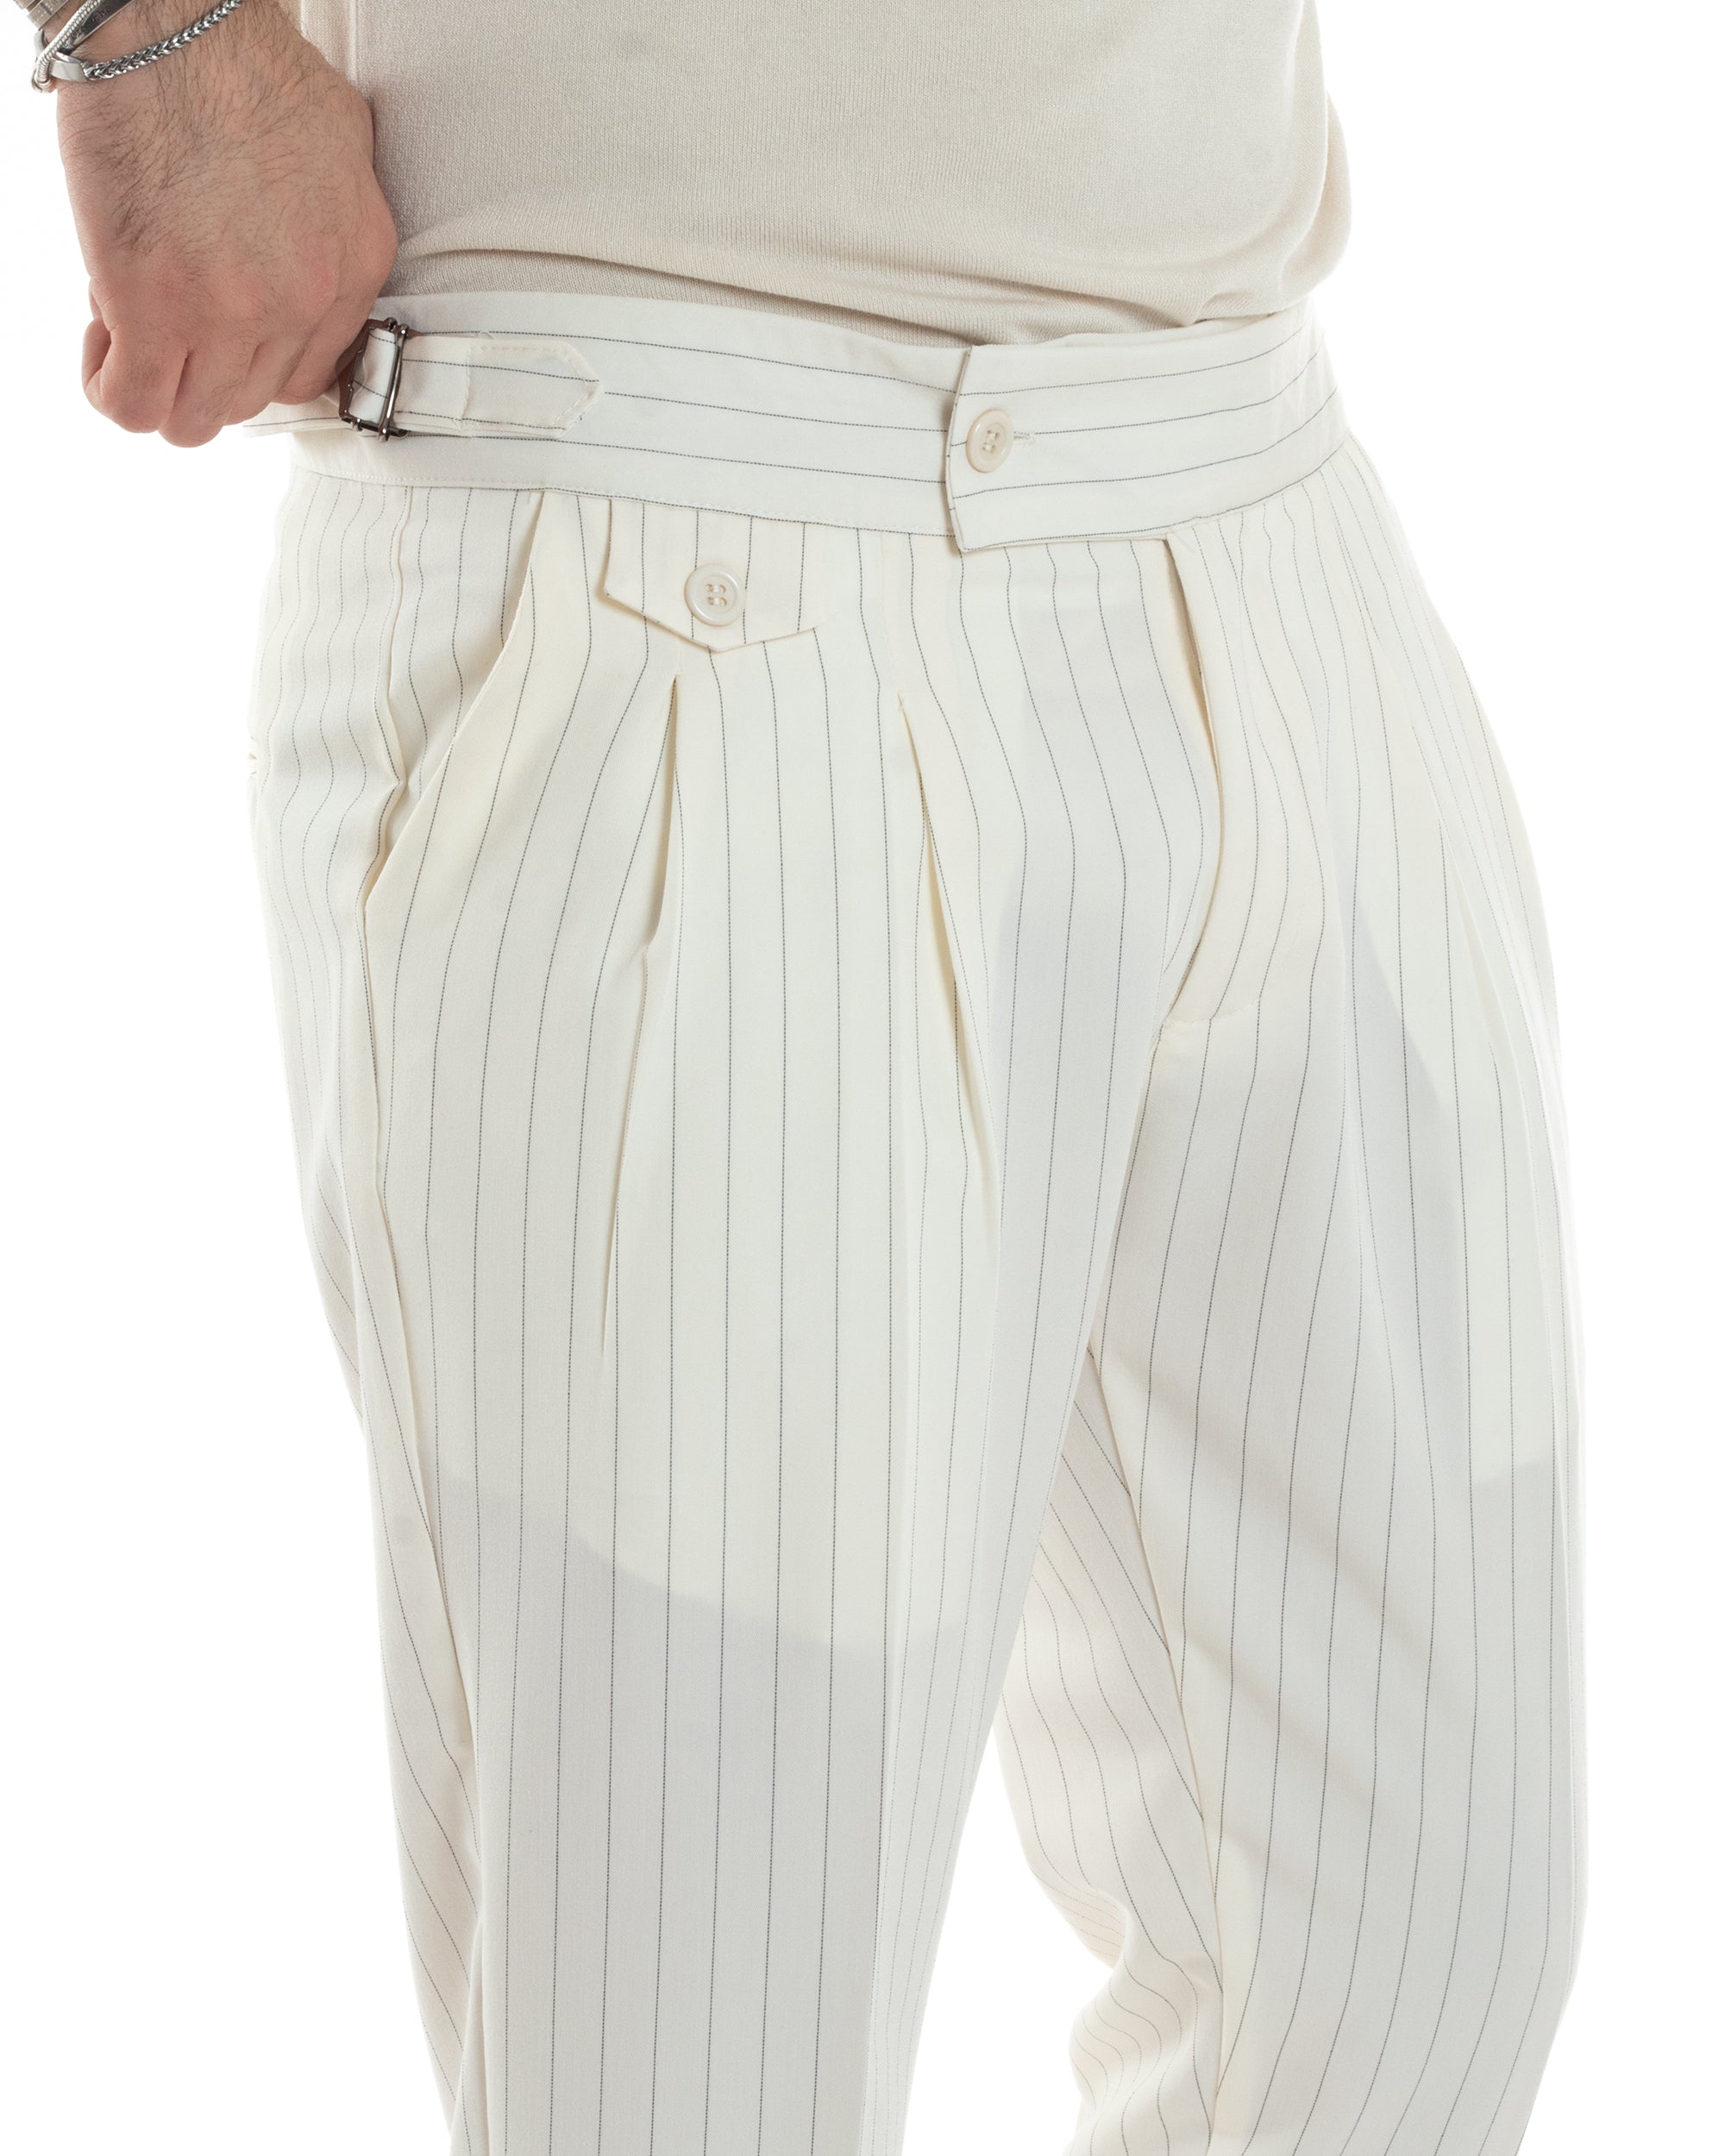 Pantaloni Uomo Classico Gessato Rigato Vita Alta Pinces Abbottonatura Allungata Fibbia Casual Bianco GIOSAL-P6085A